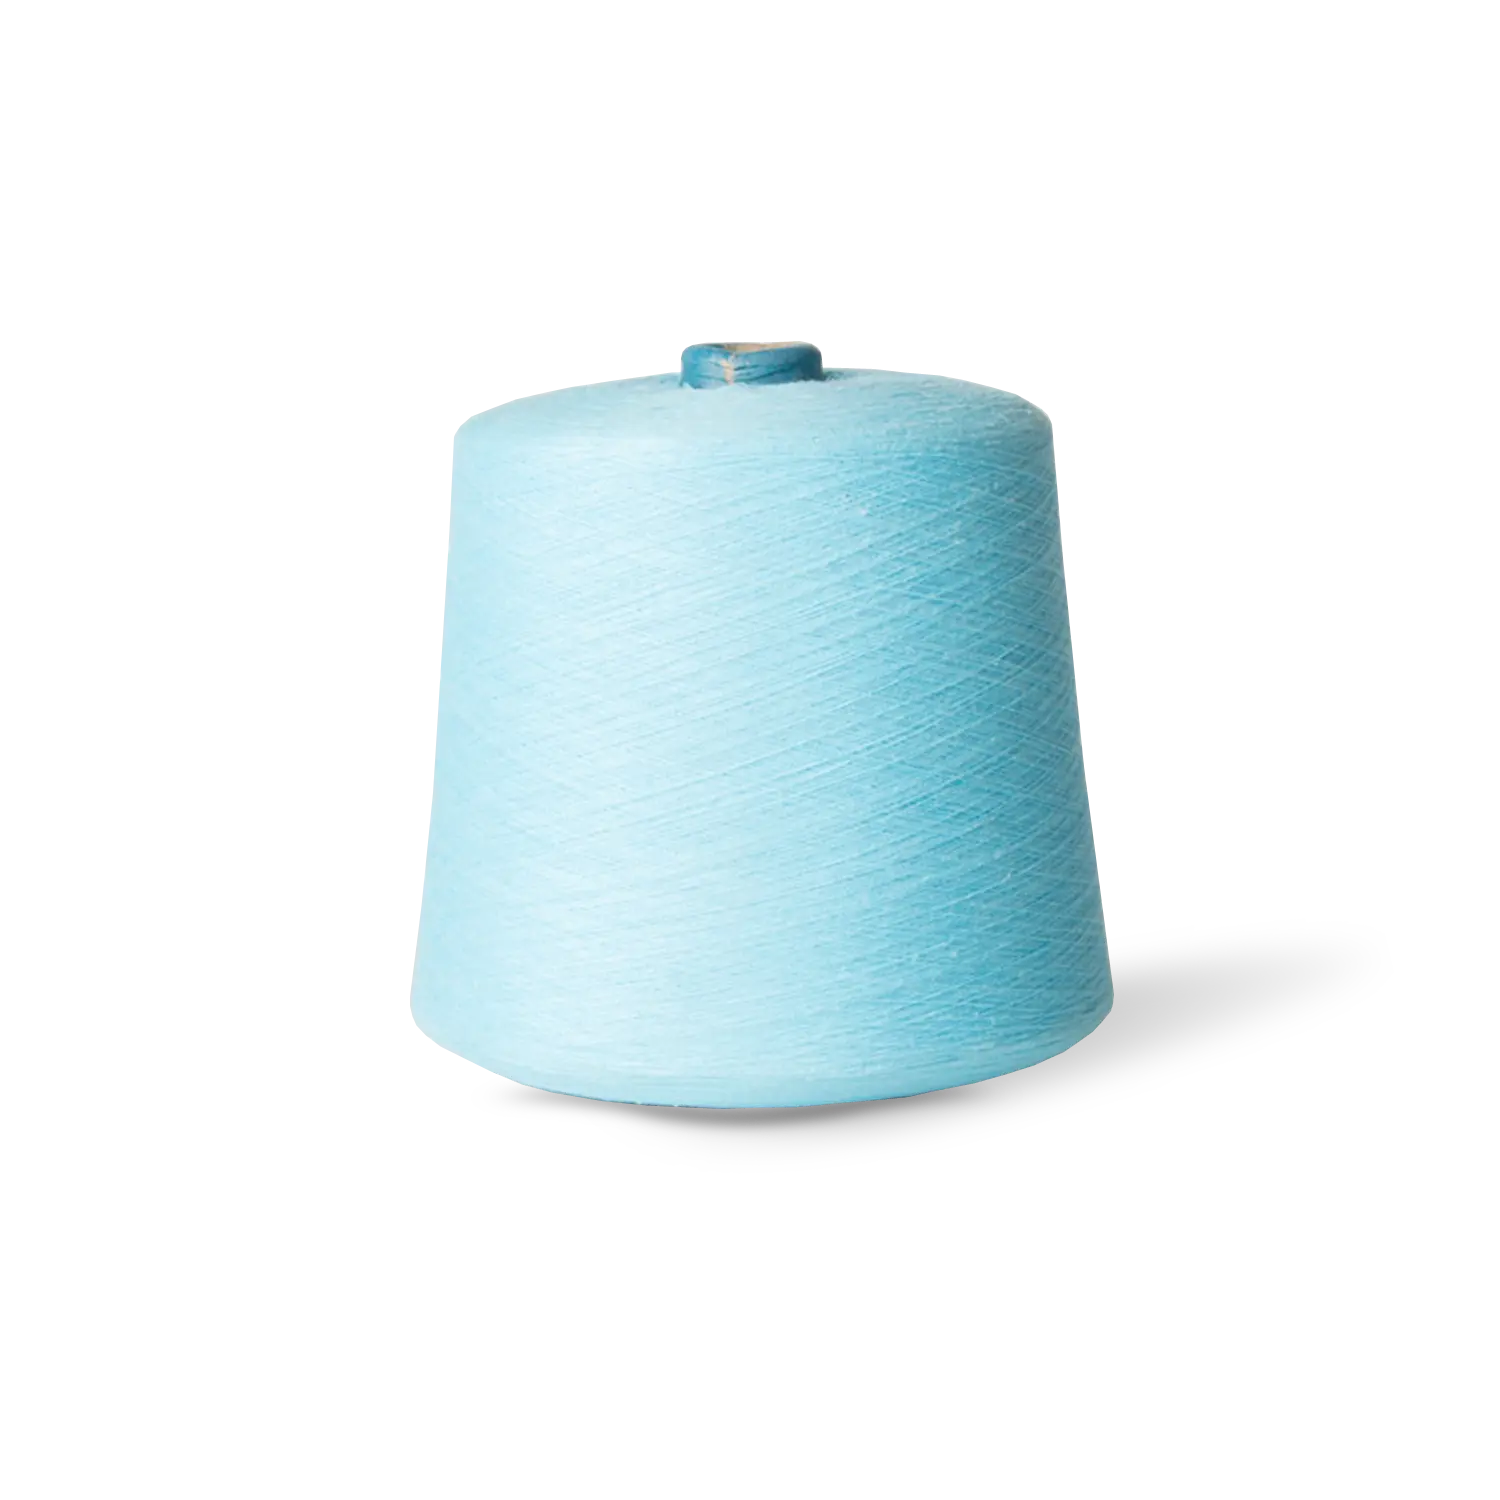 Anello di alta qualità filata 21s, 32s anello filato in poliestere per calze a maglia